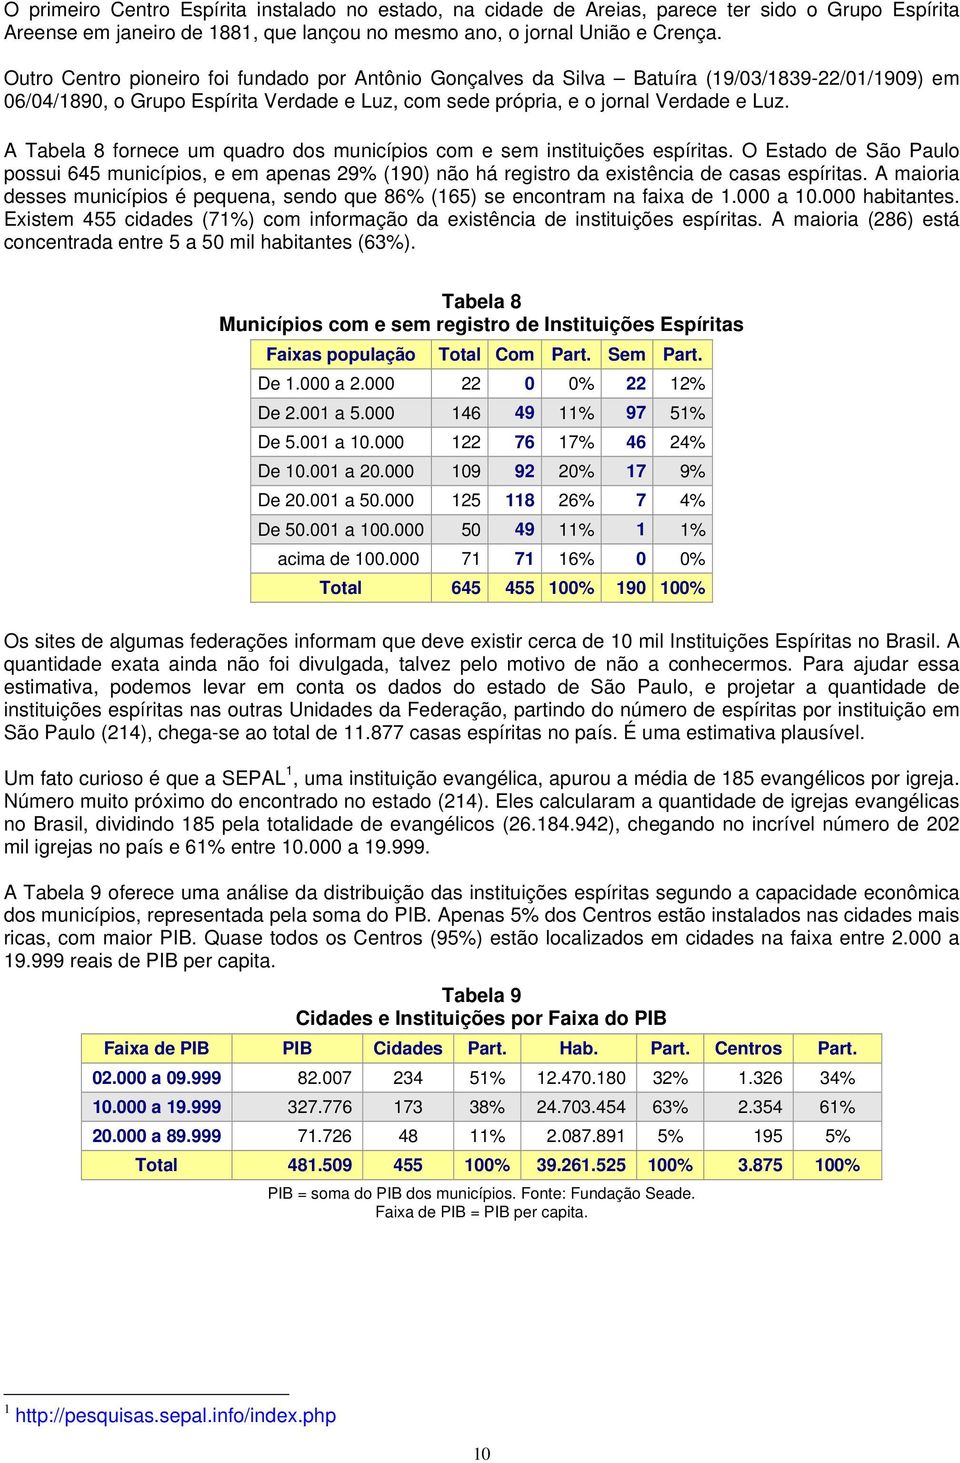 A Tabela 8 fornece um quadro dos municípios com e sem instituições espíritas. O Estado de São Paulo possui 645 municípios, e em apenas 29% (190) não há registro da existência de casas espíritas.